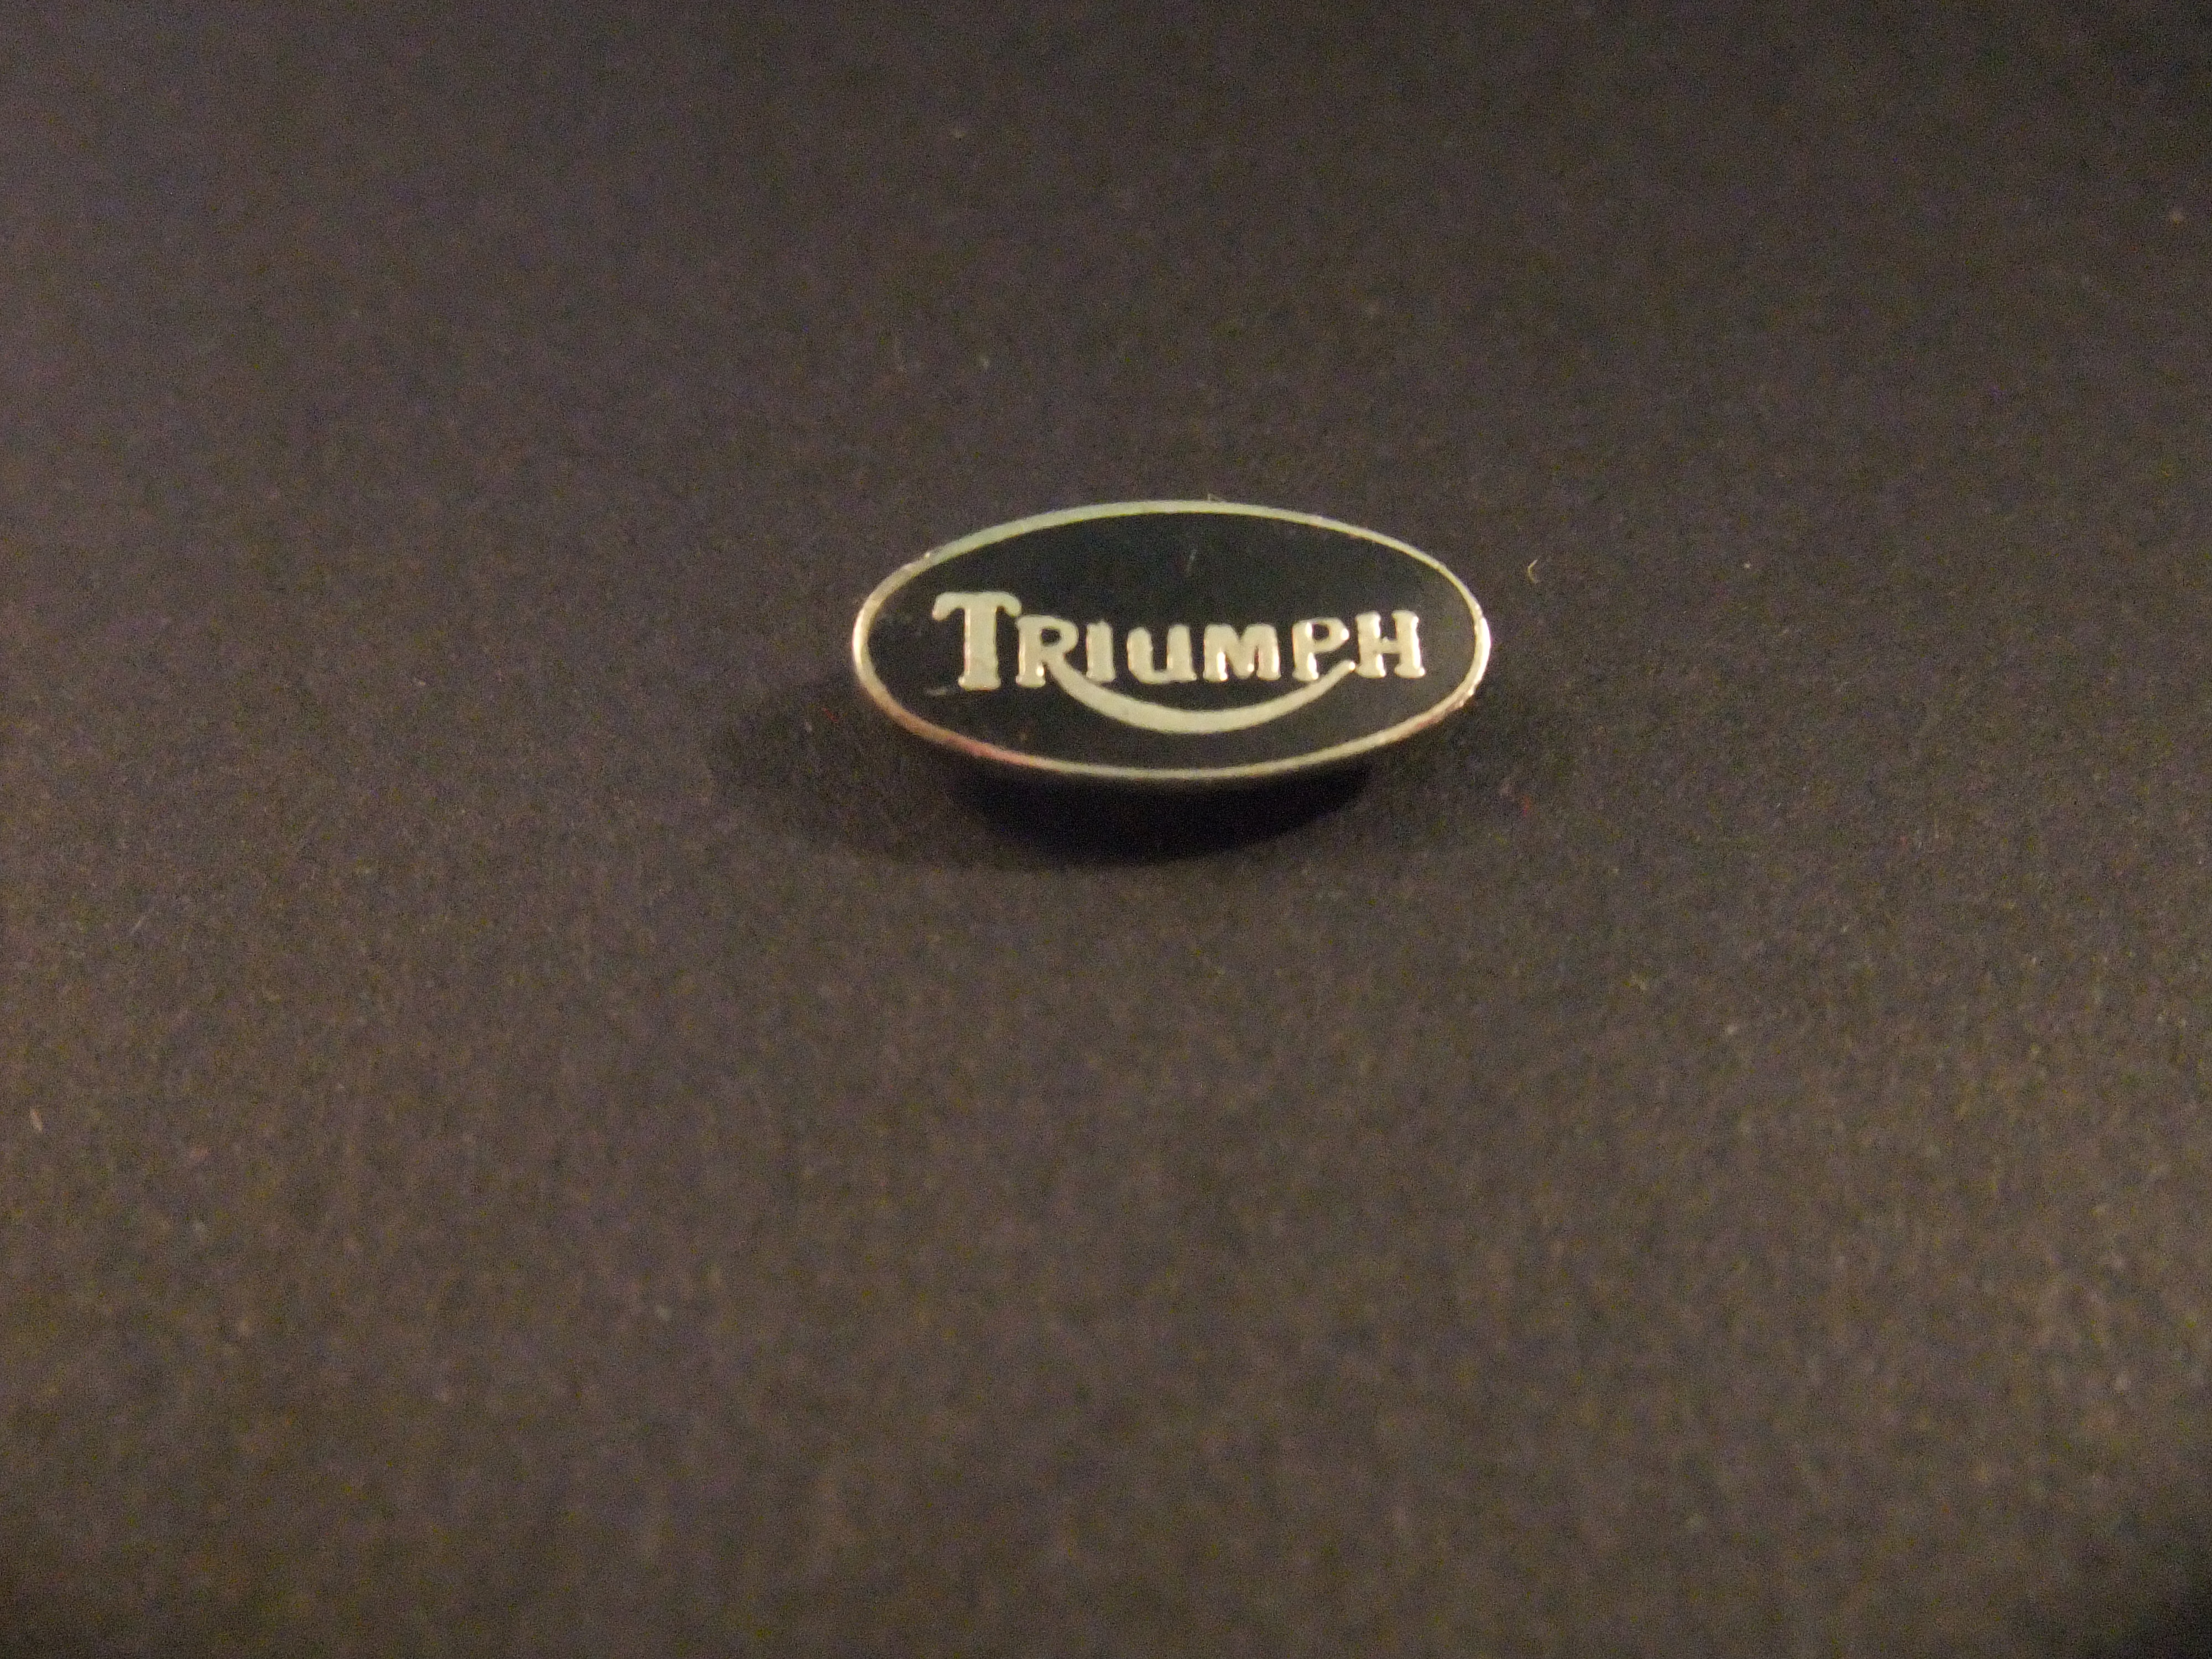 Triumph motorfiets logo zwart ovaal